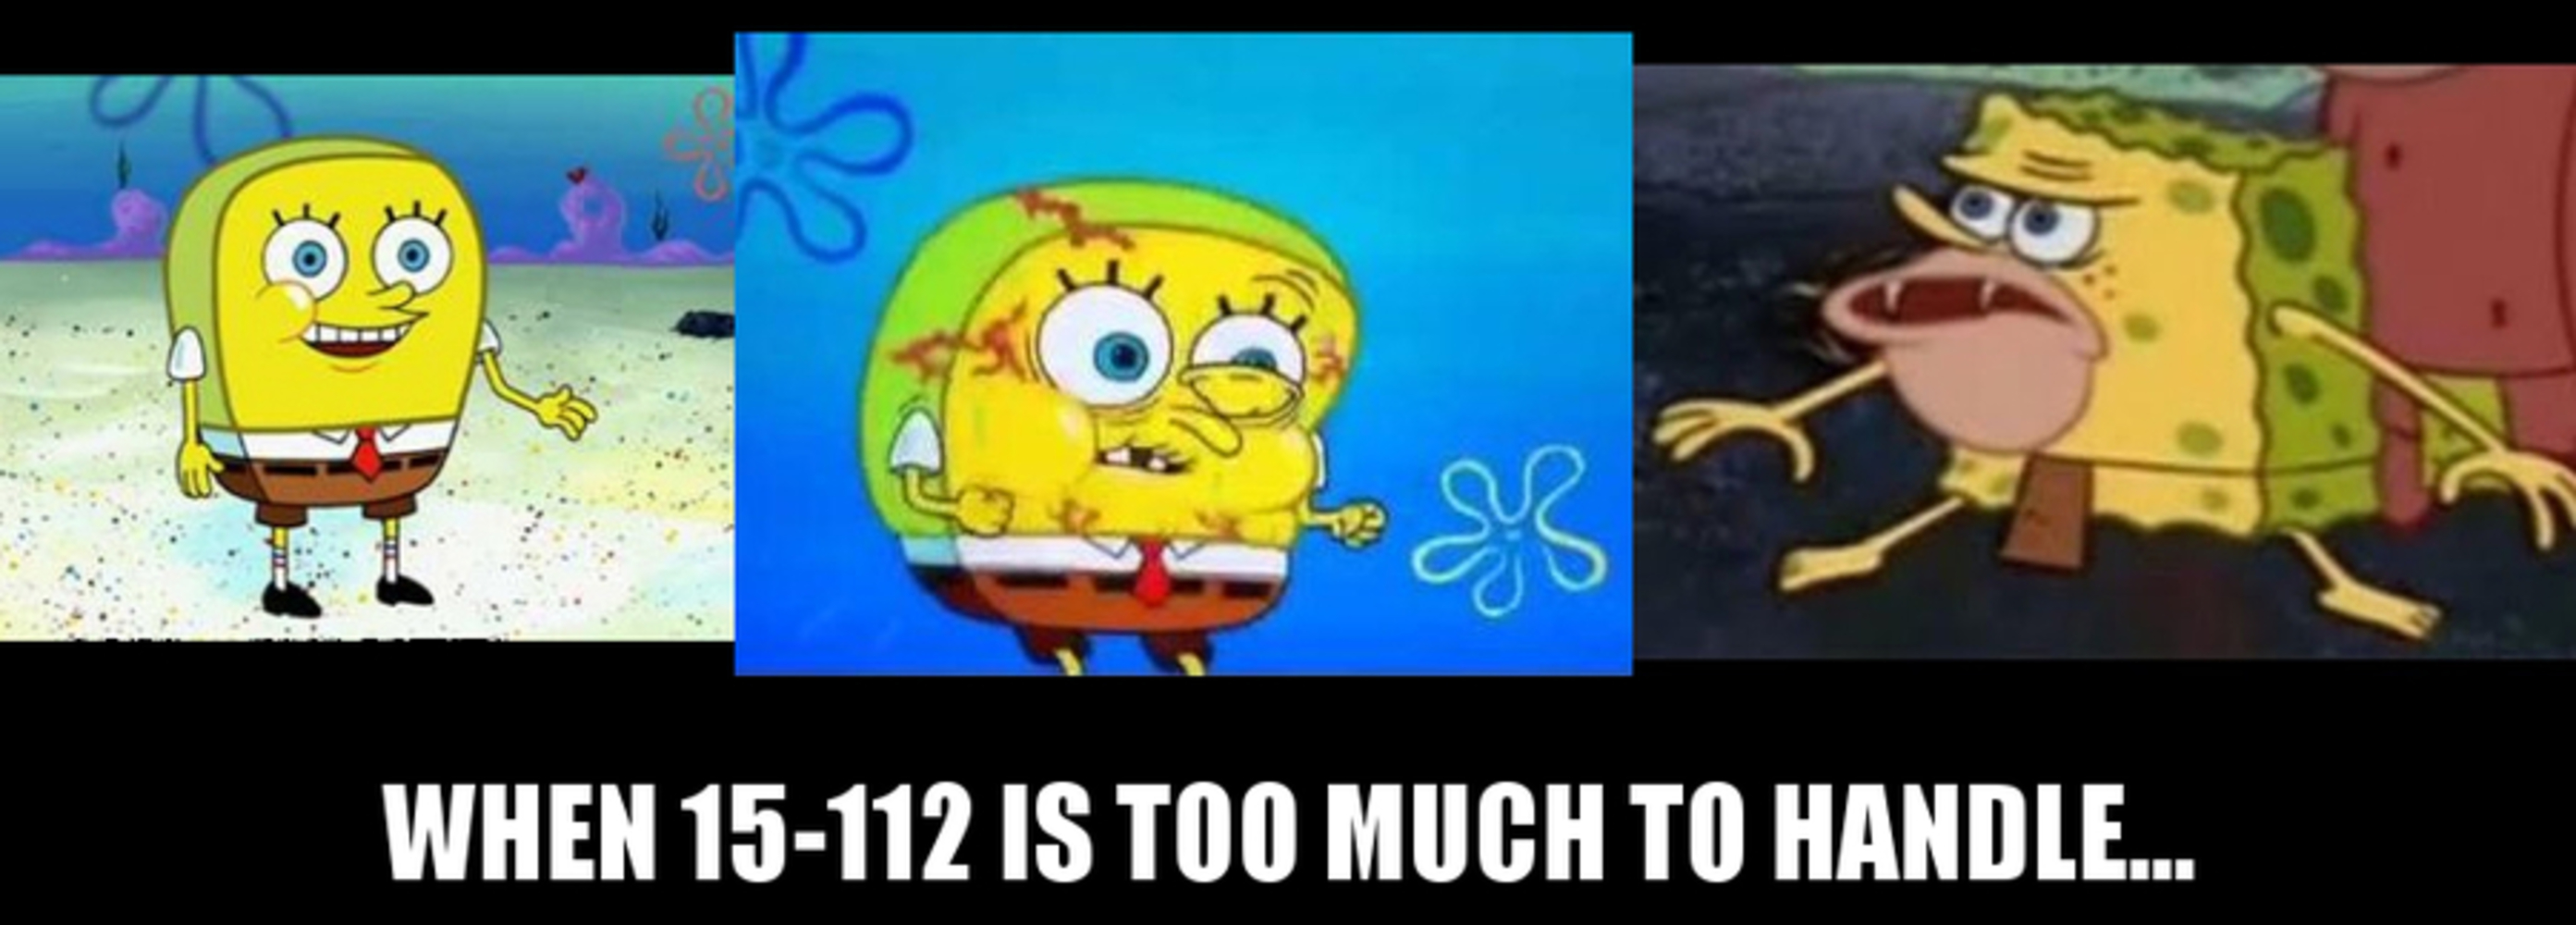 15 112 spongegar.thumb